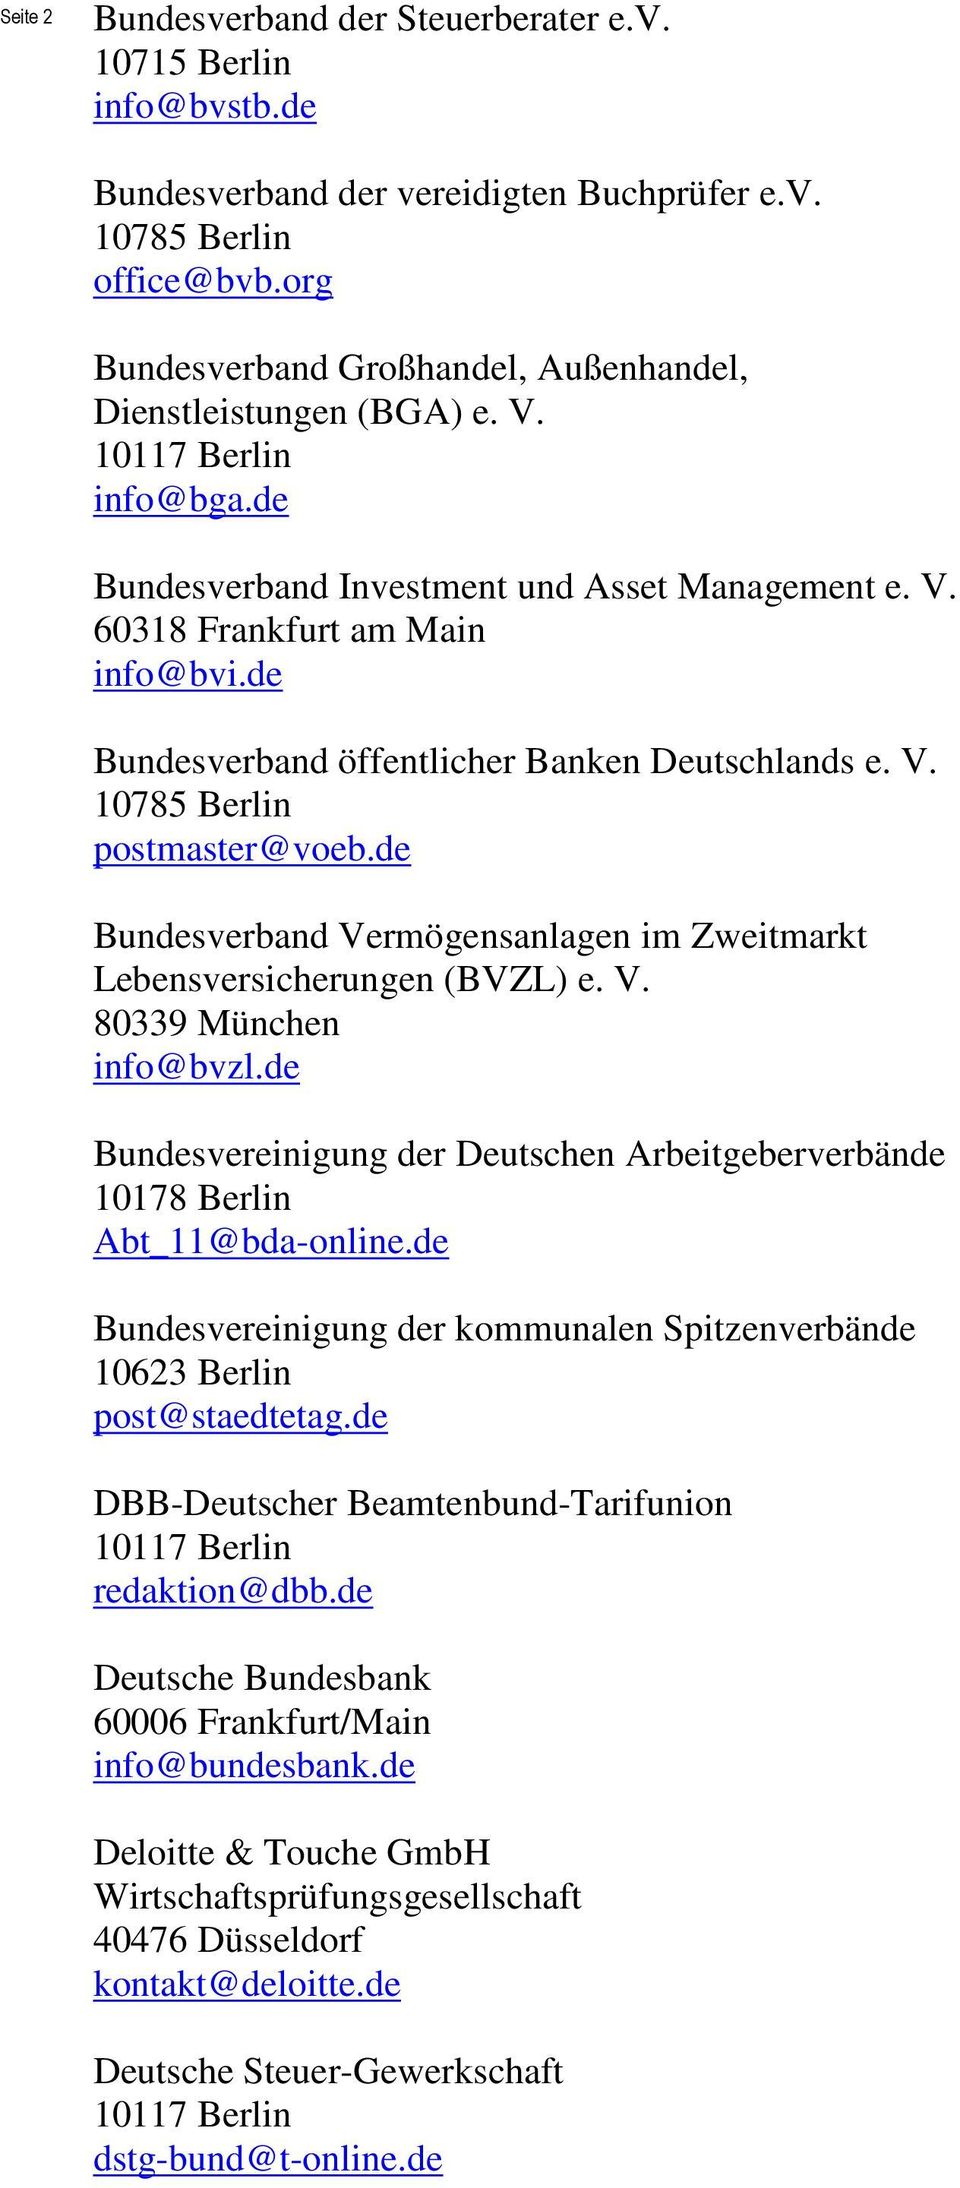 de Bundesverband öffentlicher Banken Deutschlands e. V. 10785 Berlin postmaster@voeb.de Bundesverband Vermögensanlagen im Zweitmarkt Lebensversicherungen (BVZL) e. V. 80339 München info@bvzl.